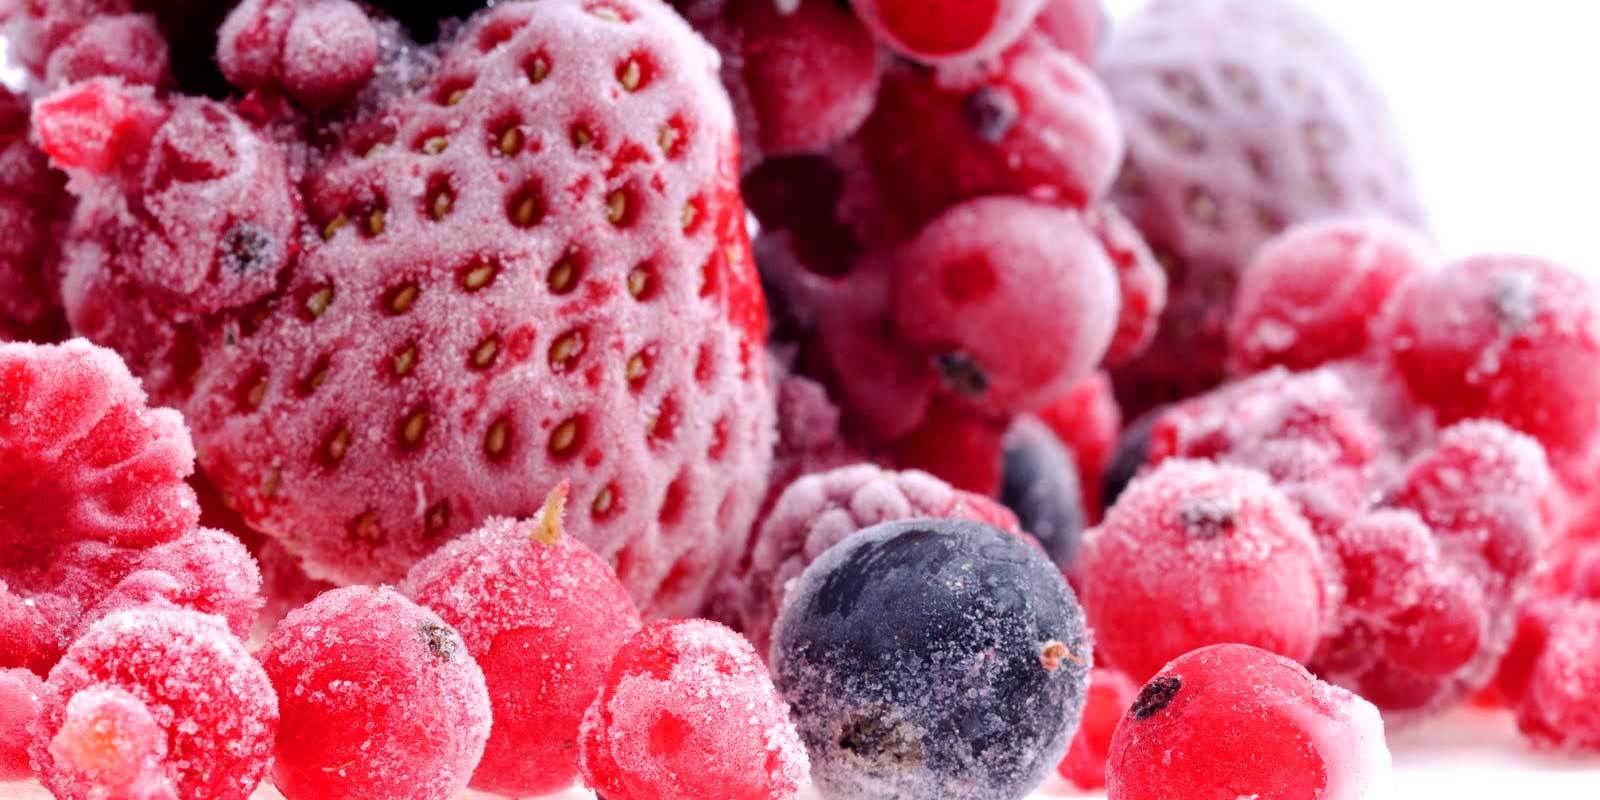 Frutat dhe perimet e ngrira Qofte per akullore te bere ne shtepi, per krijimet tuaja me recel apo per nje torte te shijshme me fruta te ngrira, keni sasite e duhura ne stok. Nuk kerkon ndonje magji per te perpunuar ne menyre spontane fruta te ngrira.